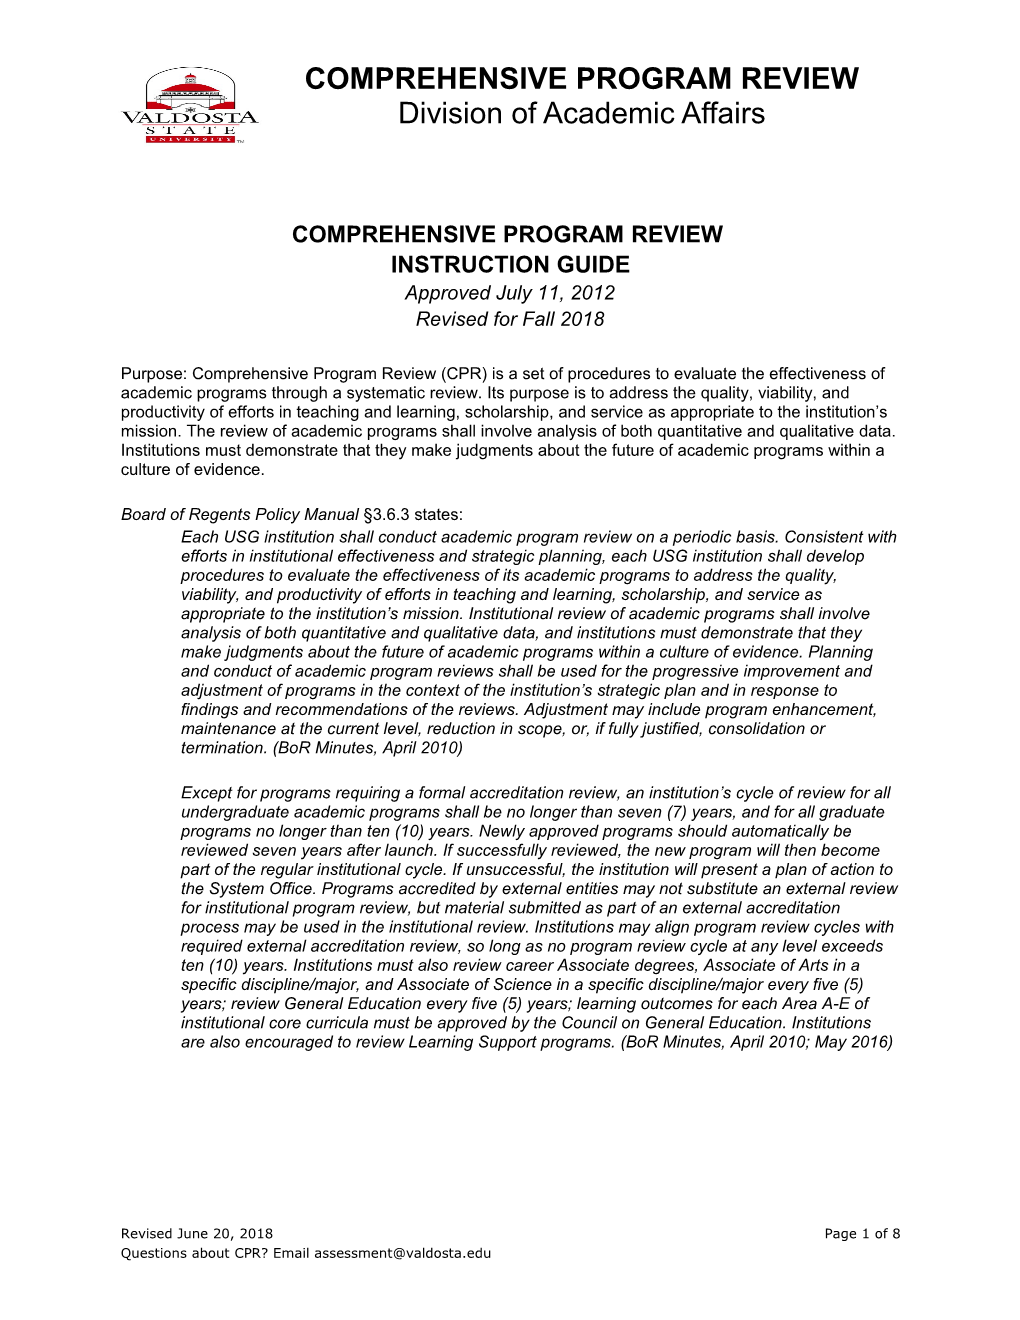 Comprehensive Program Review